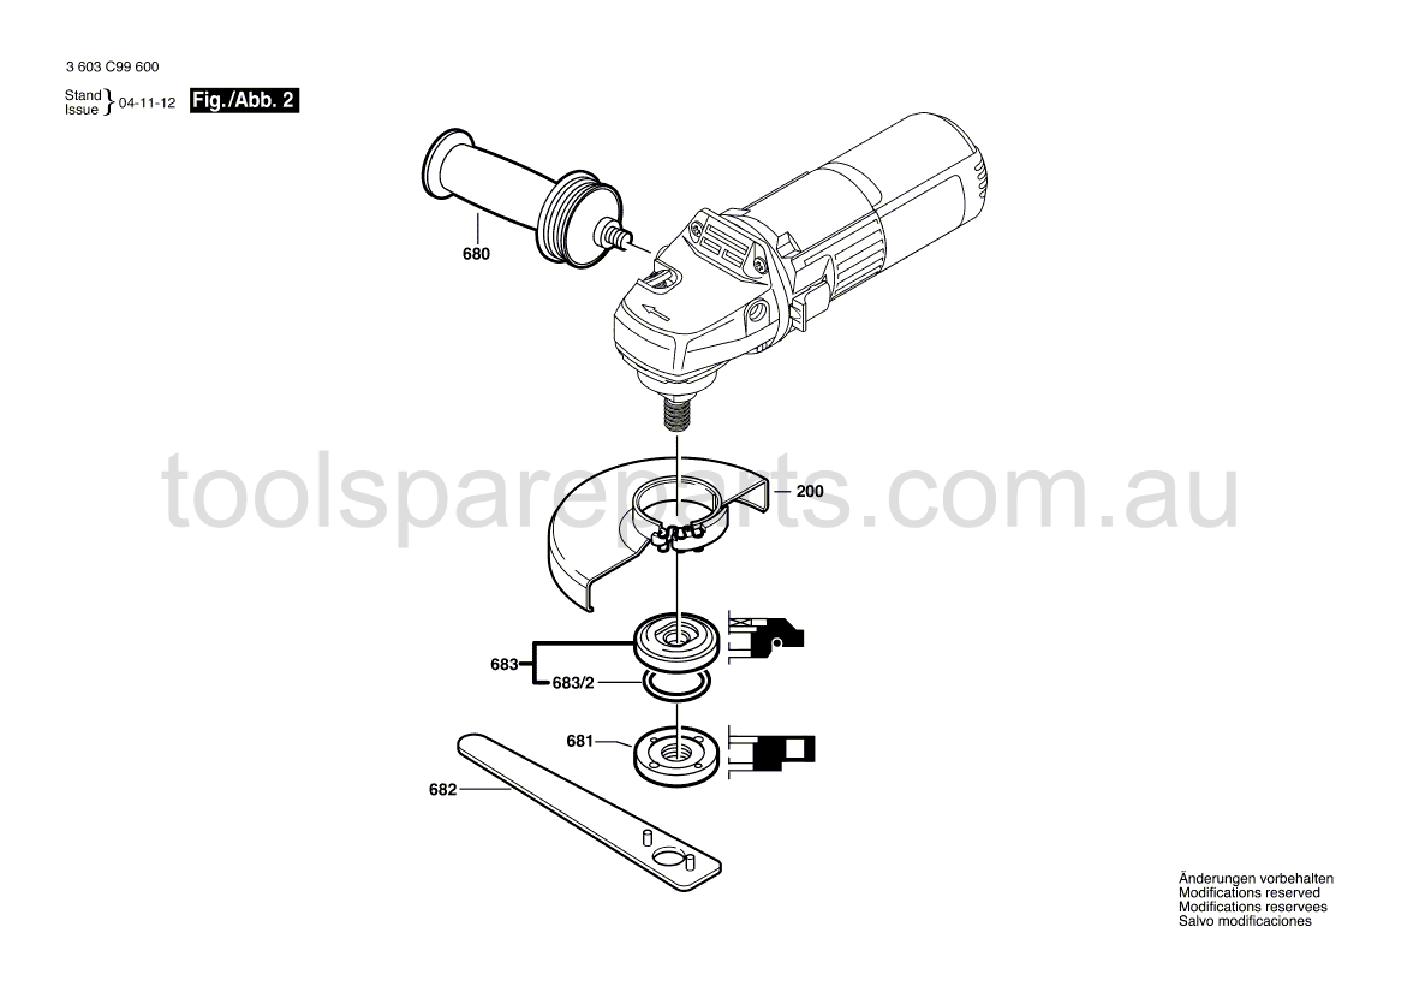 Bosch PWS 7-115 3603C99641  Diagram 2